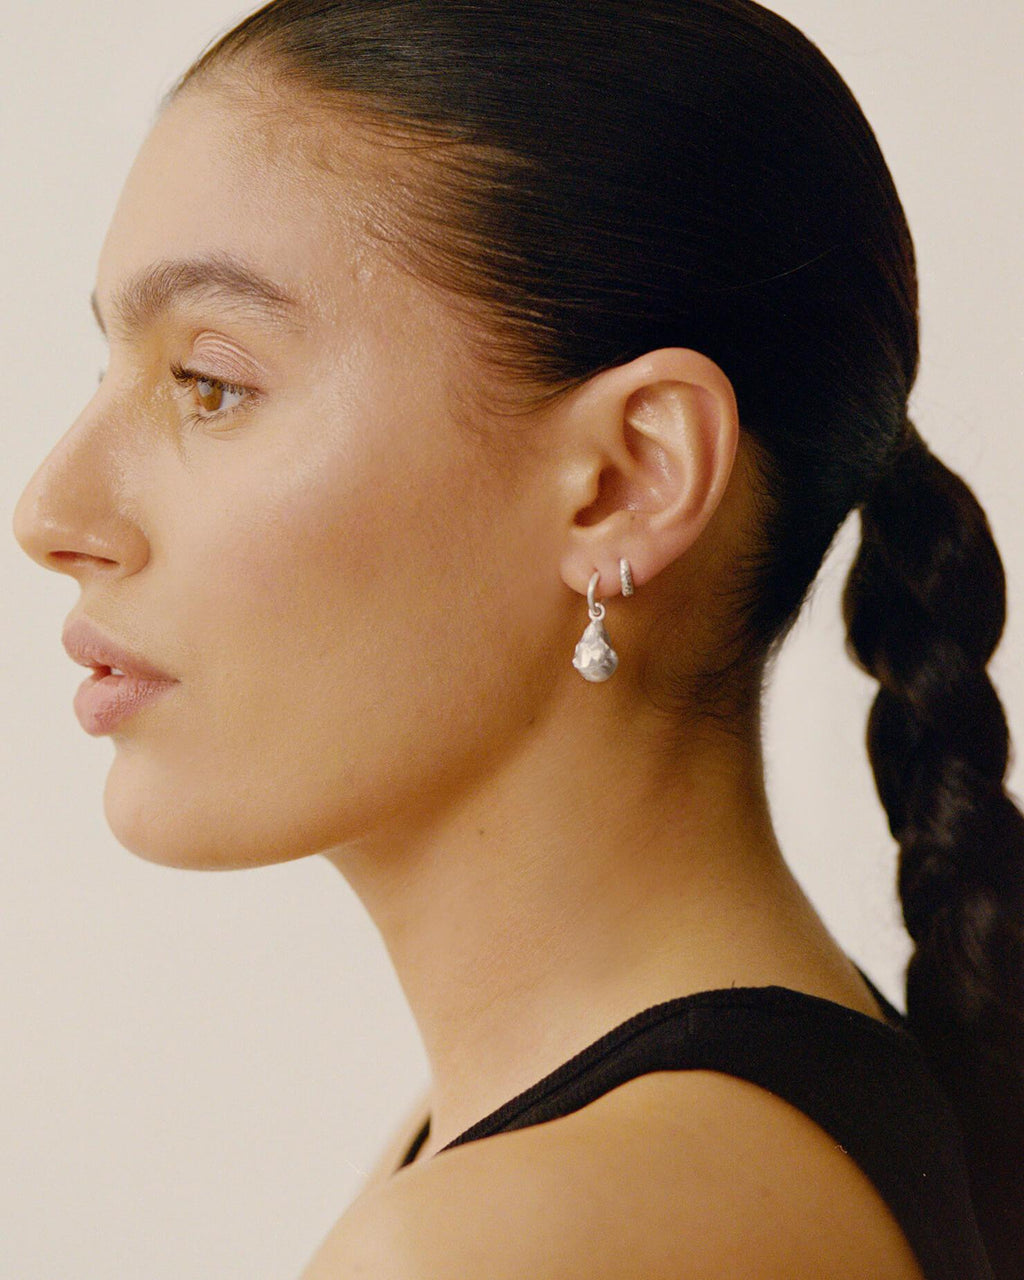 Chanel Crystal Teardrop Earrings - Silver-Tone Metal Drop, Earrings -  CHA248006